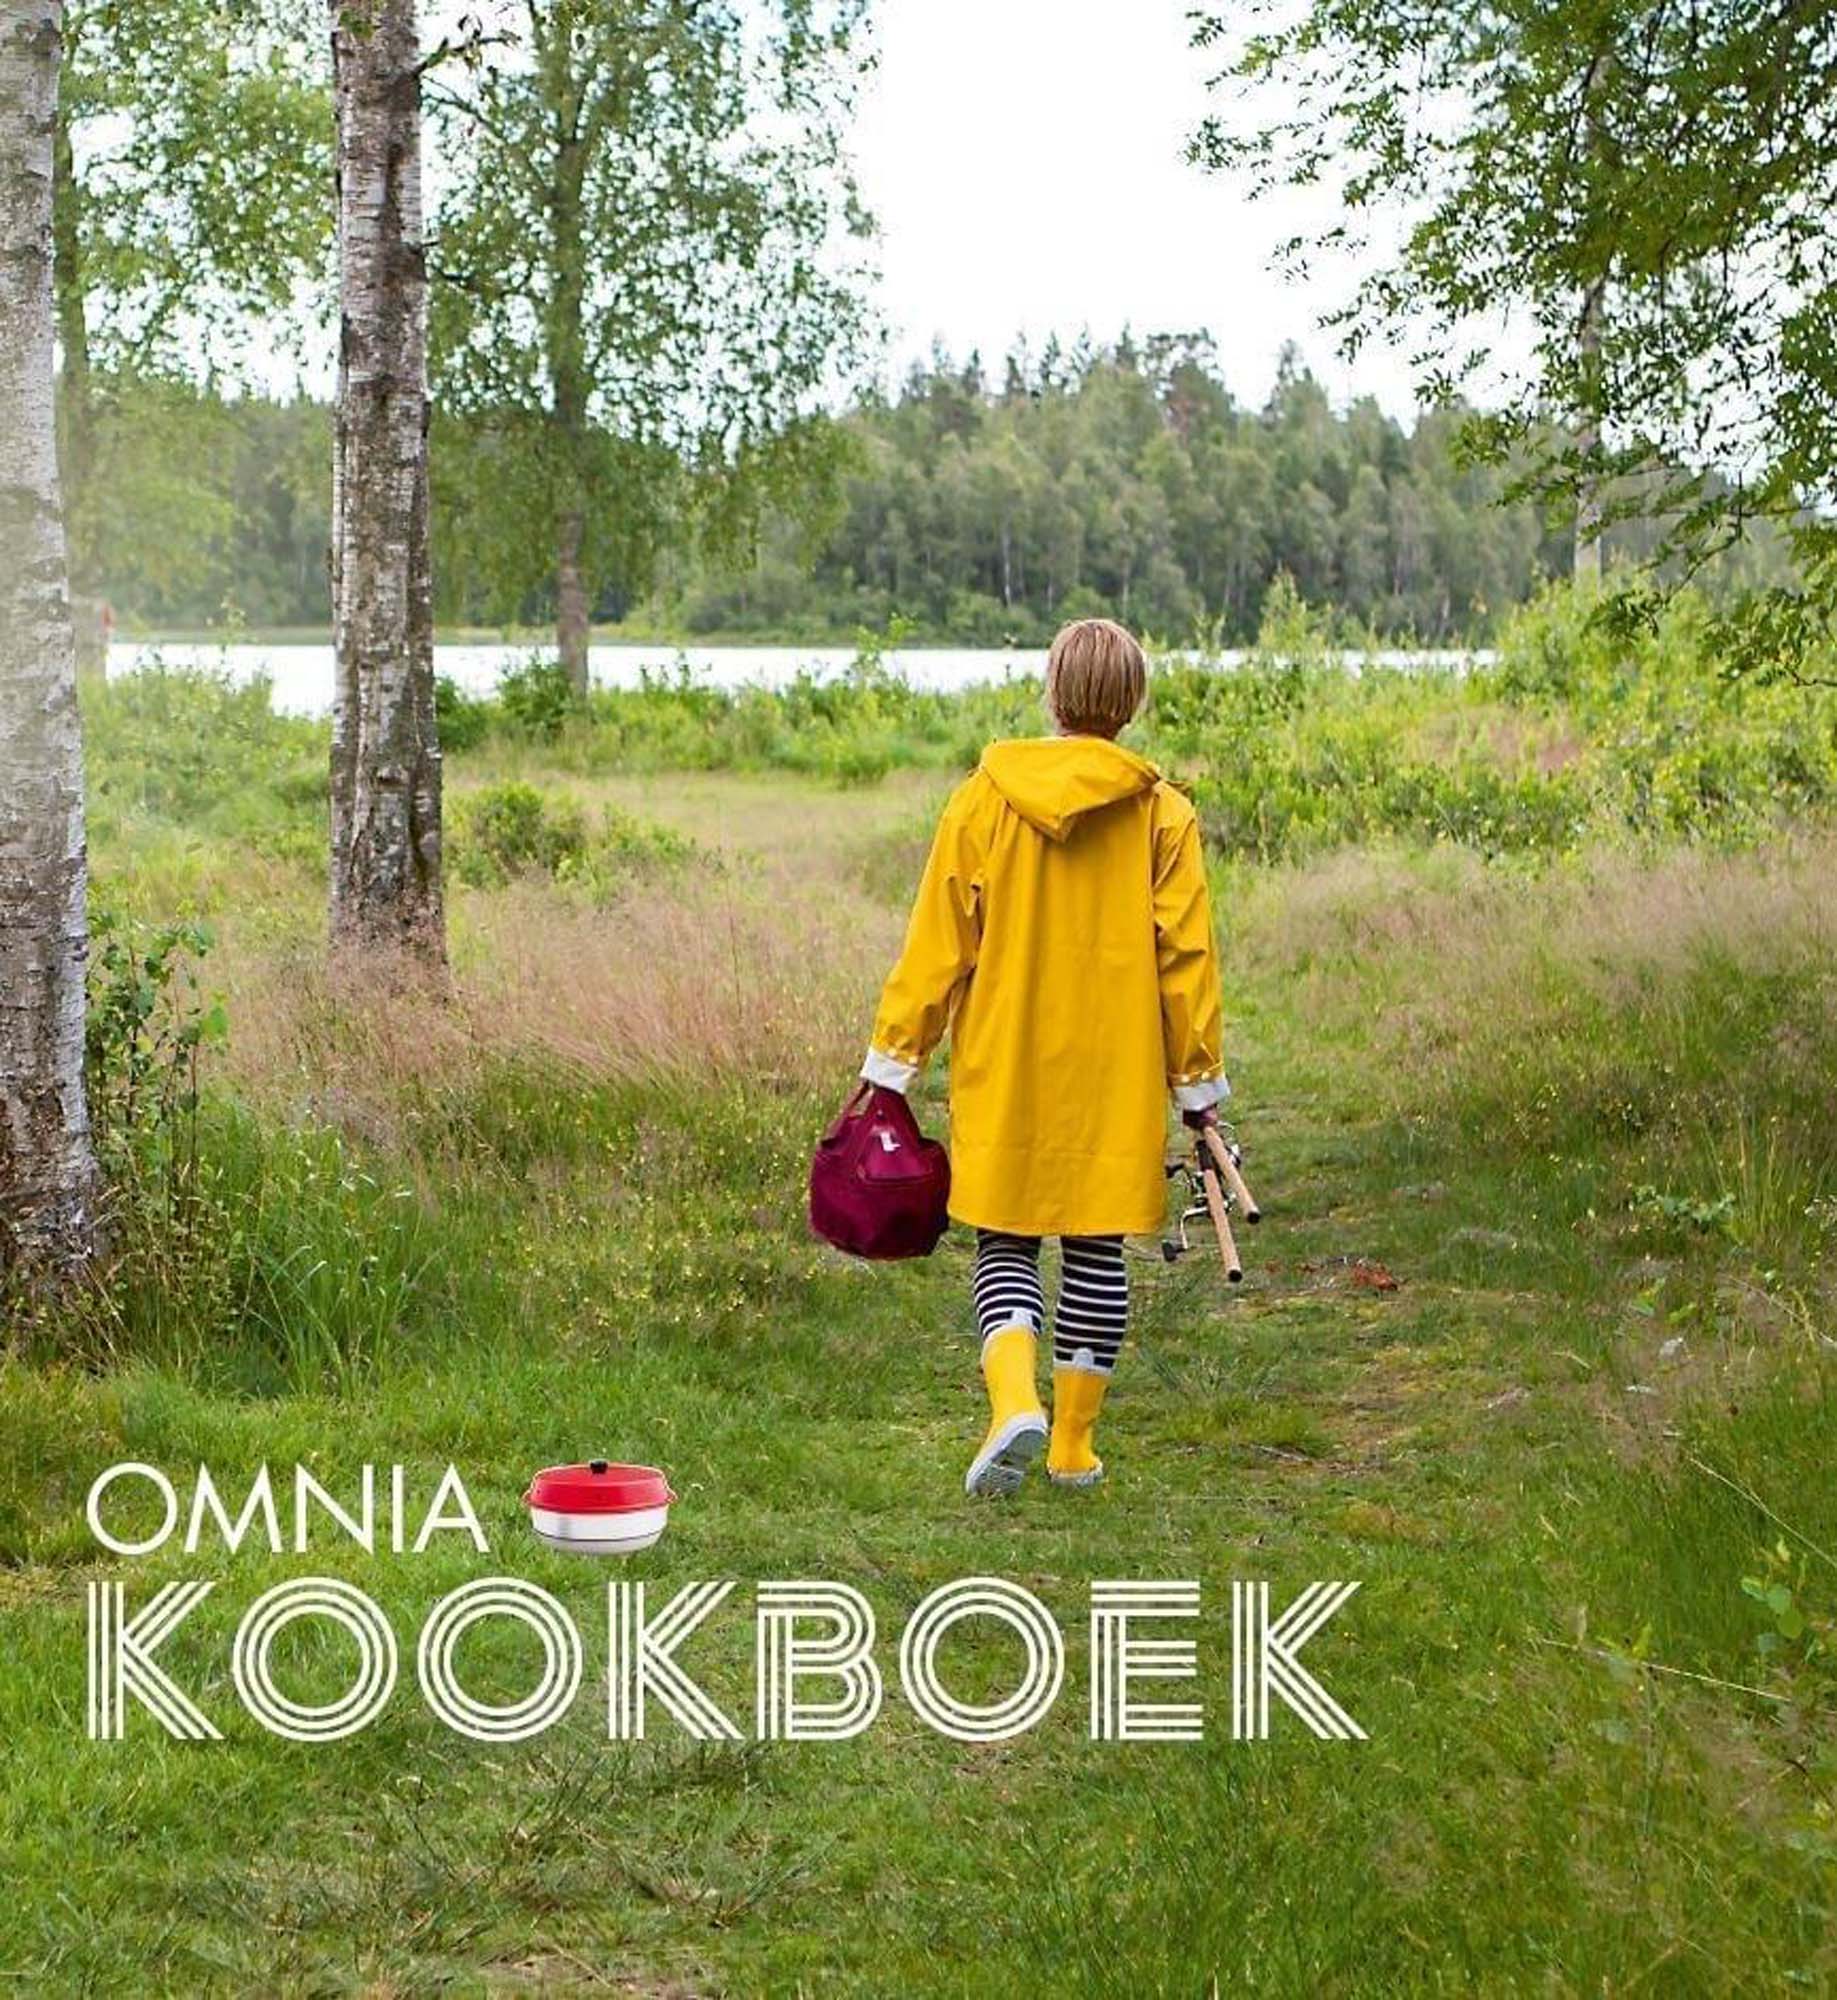 OMNIA Kookboek Nederlands 2021